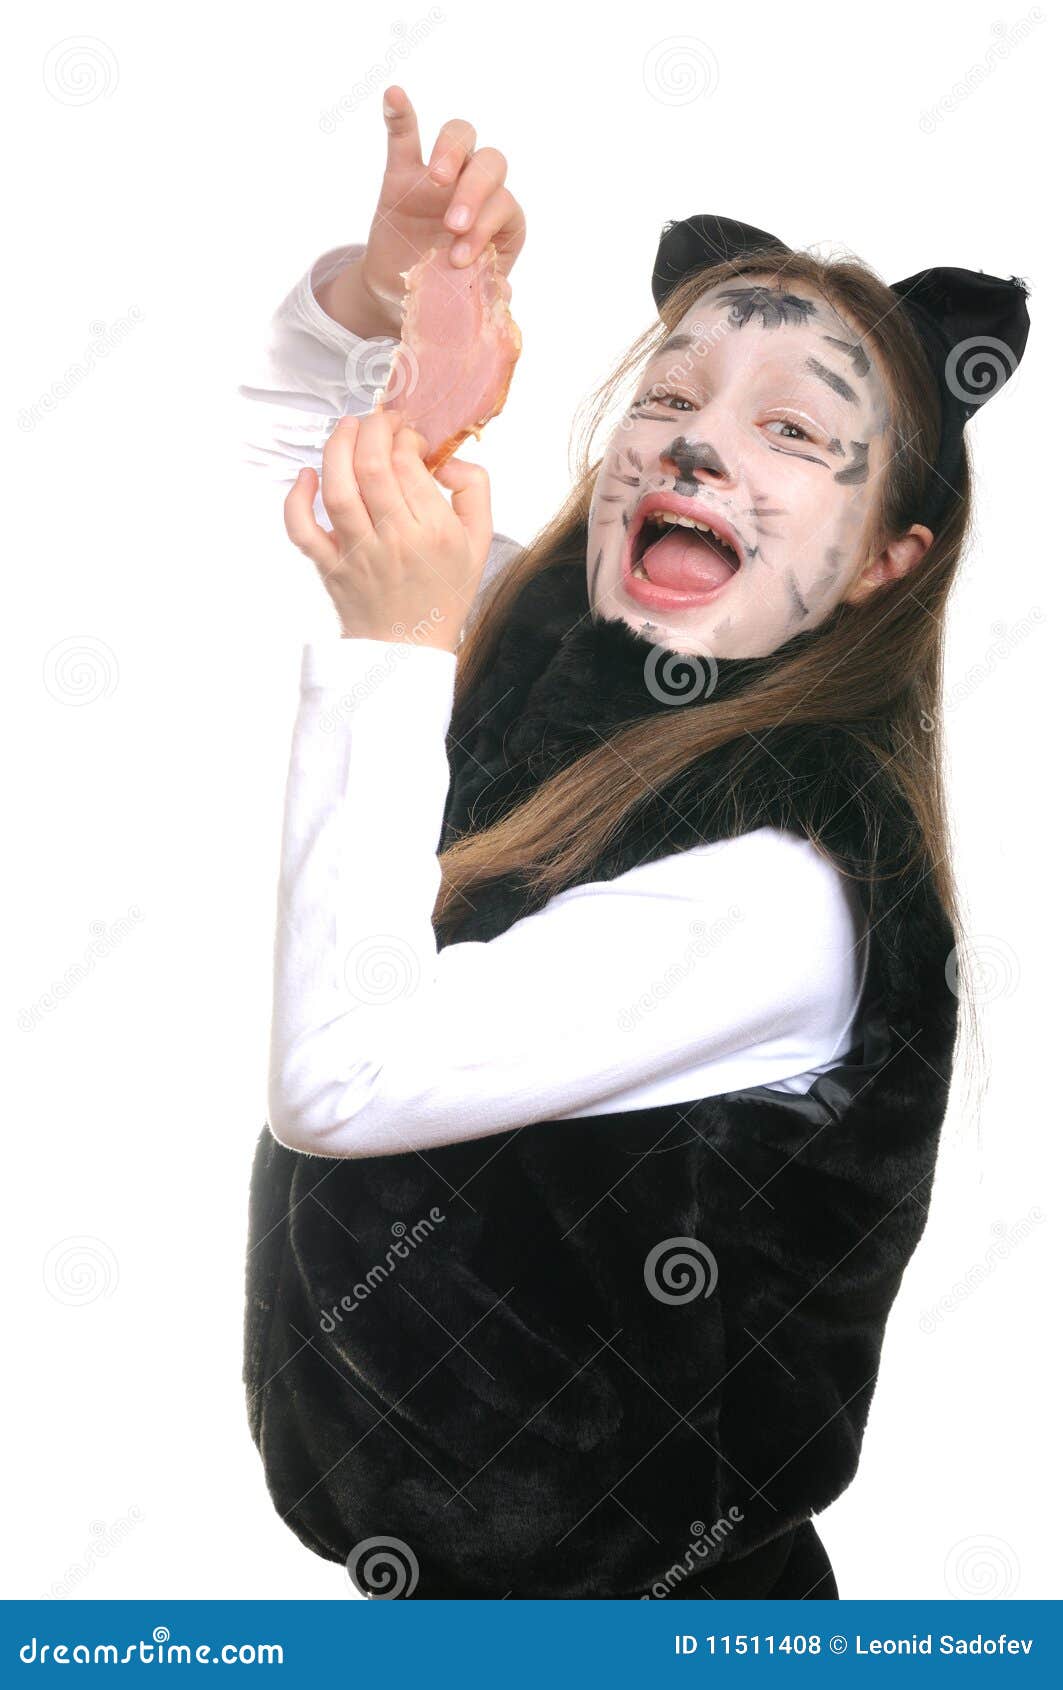 Miezekatze. Mädchen in einem Katzekostüm. Portrait des jungen Mädchens in einem Miezekatzekostüm getrennt auf Weiß